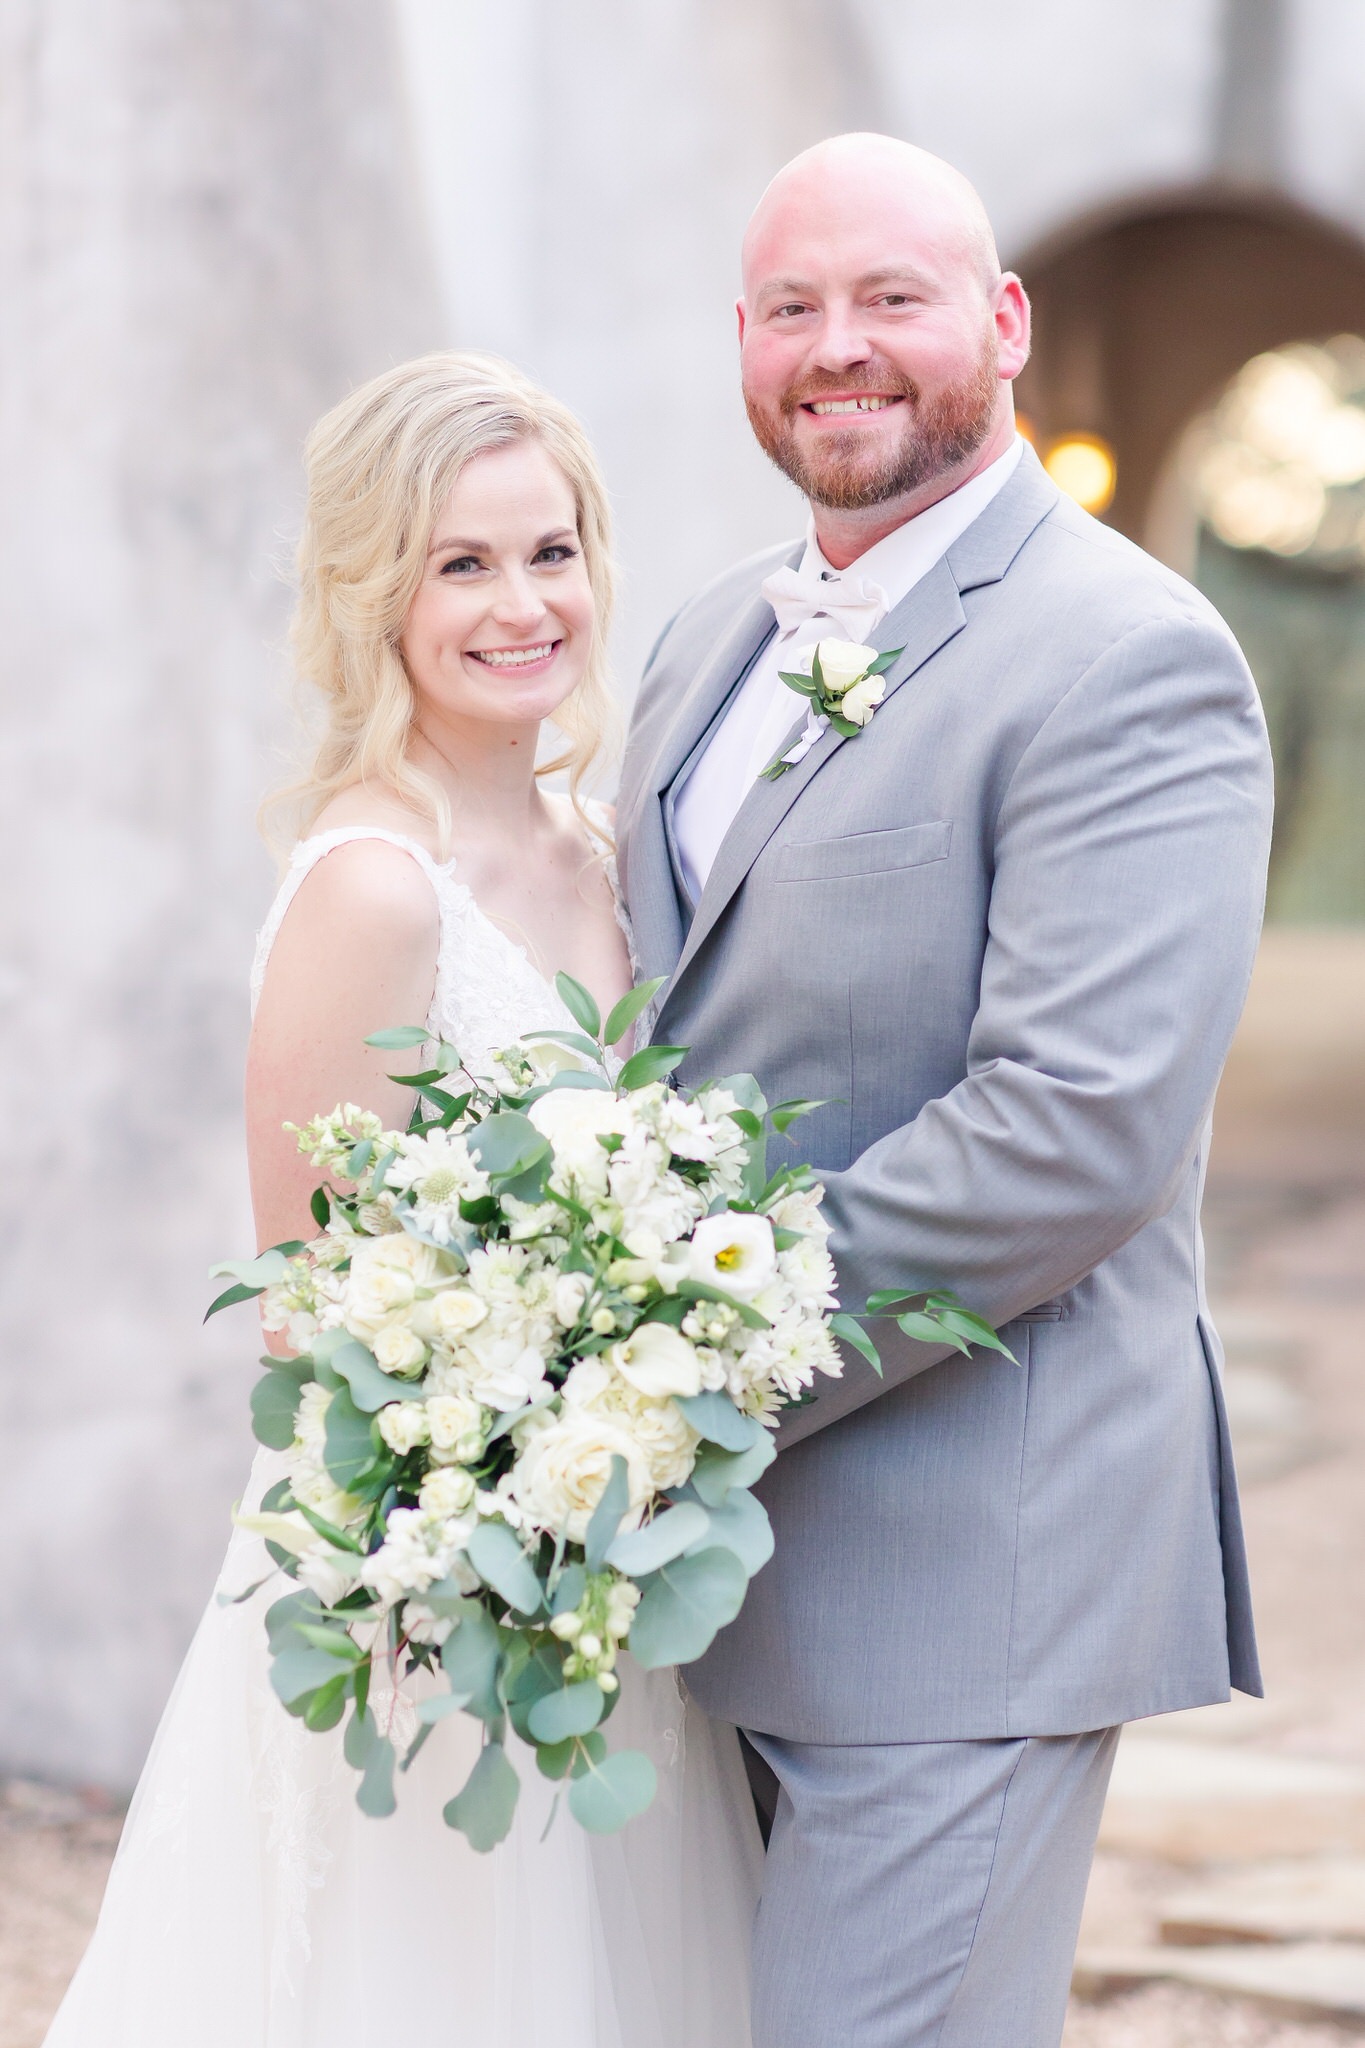 A Grey & Gold wedding at Lost Mission in Spring Branch, TX by Dawn Elizabeth Studios, San Antonio Wedding Photographer